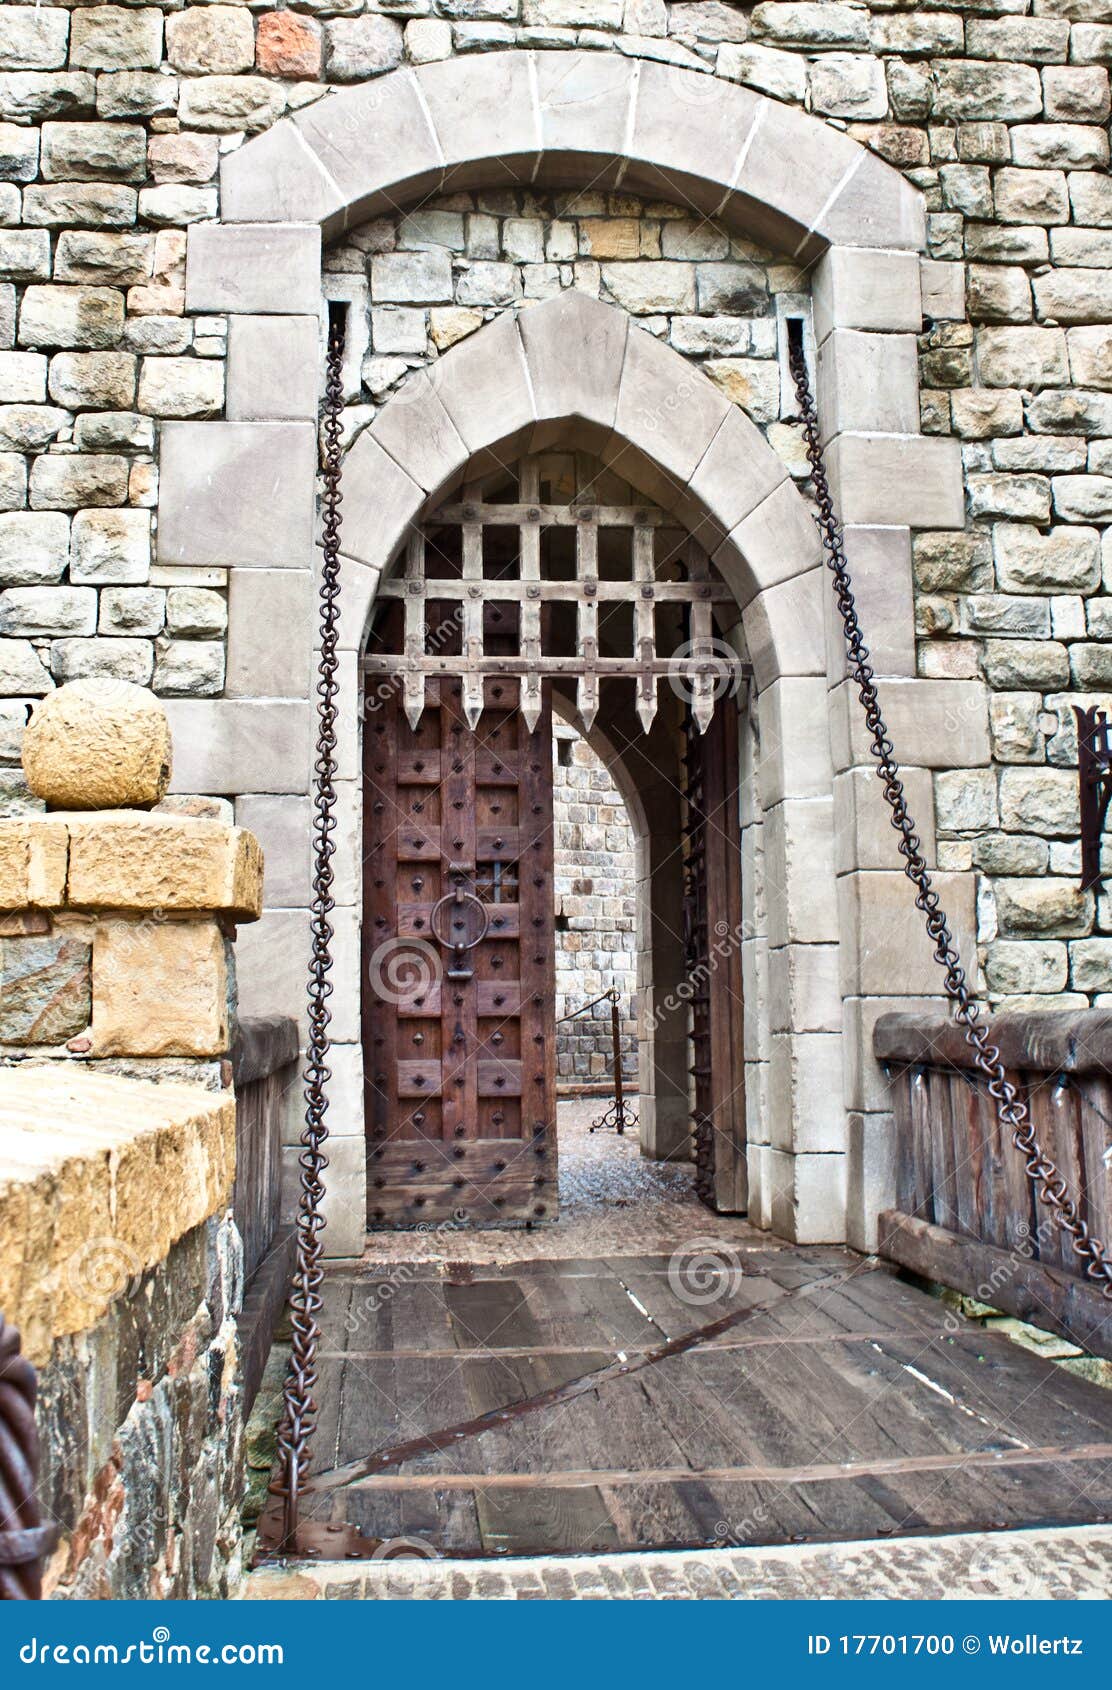 Castle front door